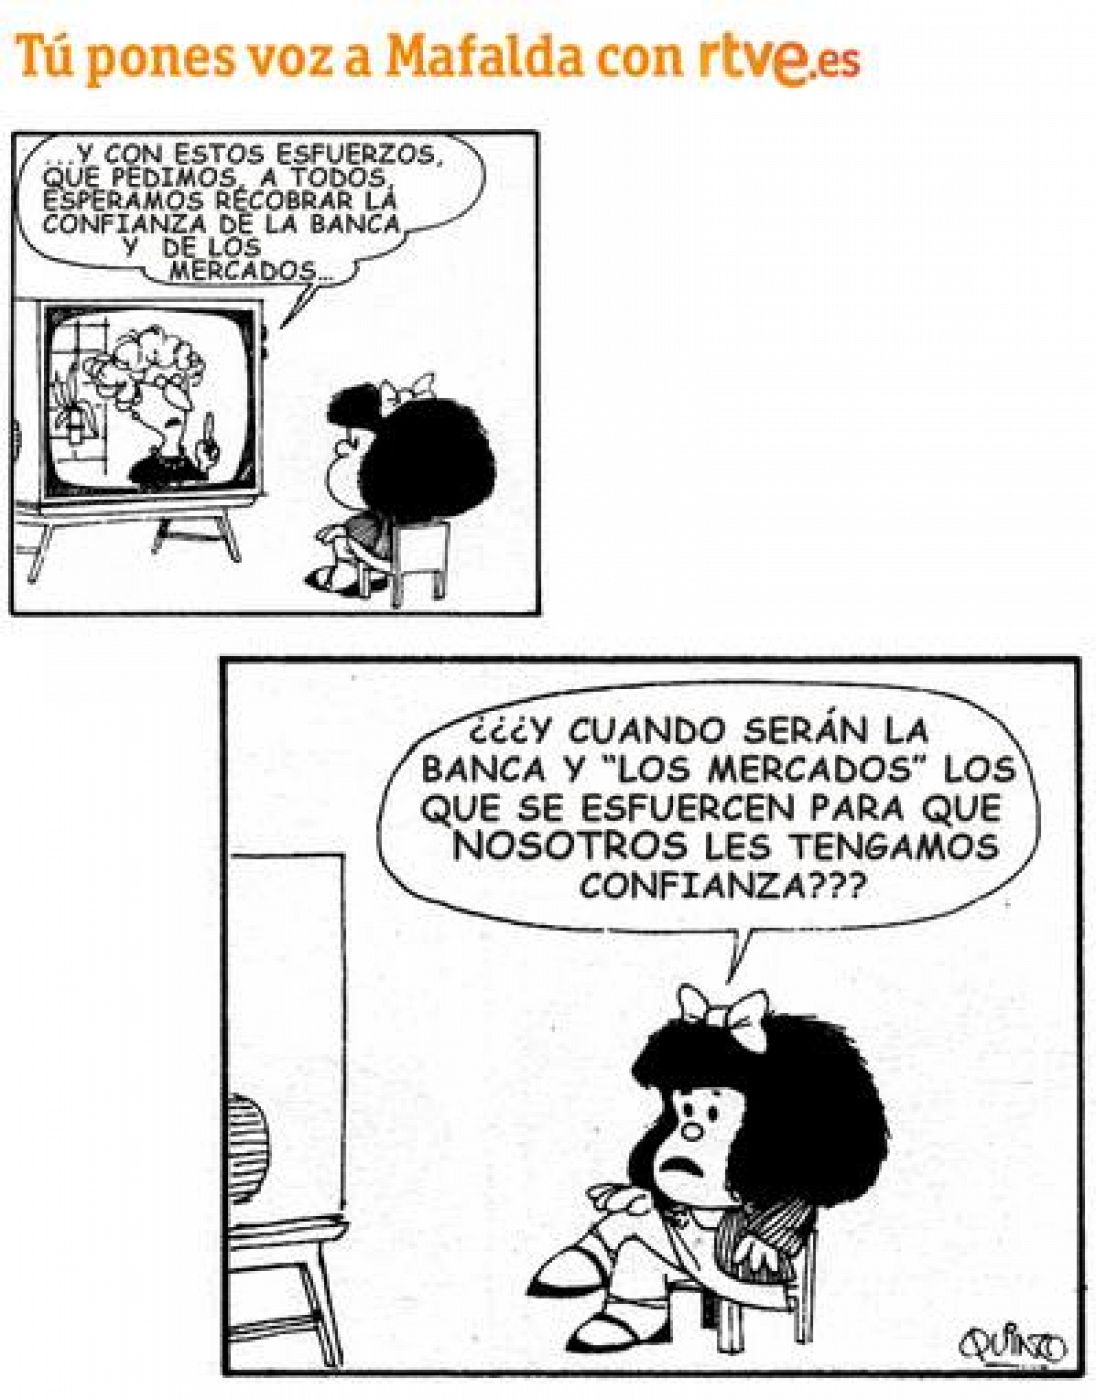 Celebra con nosotros el cumpleaños de Mafalda! | RTVE